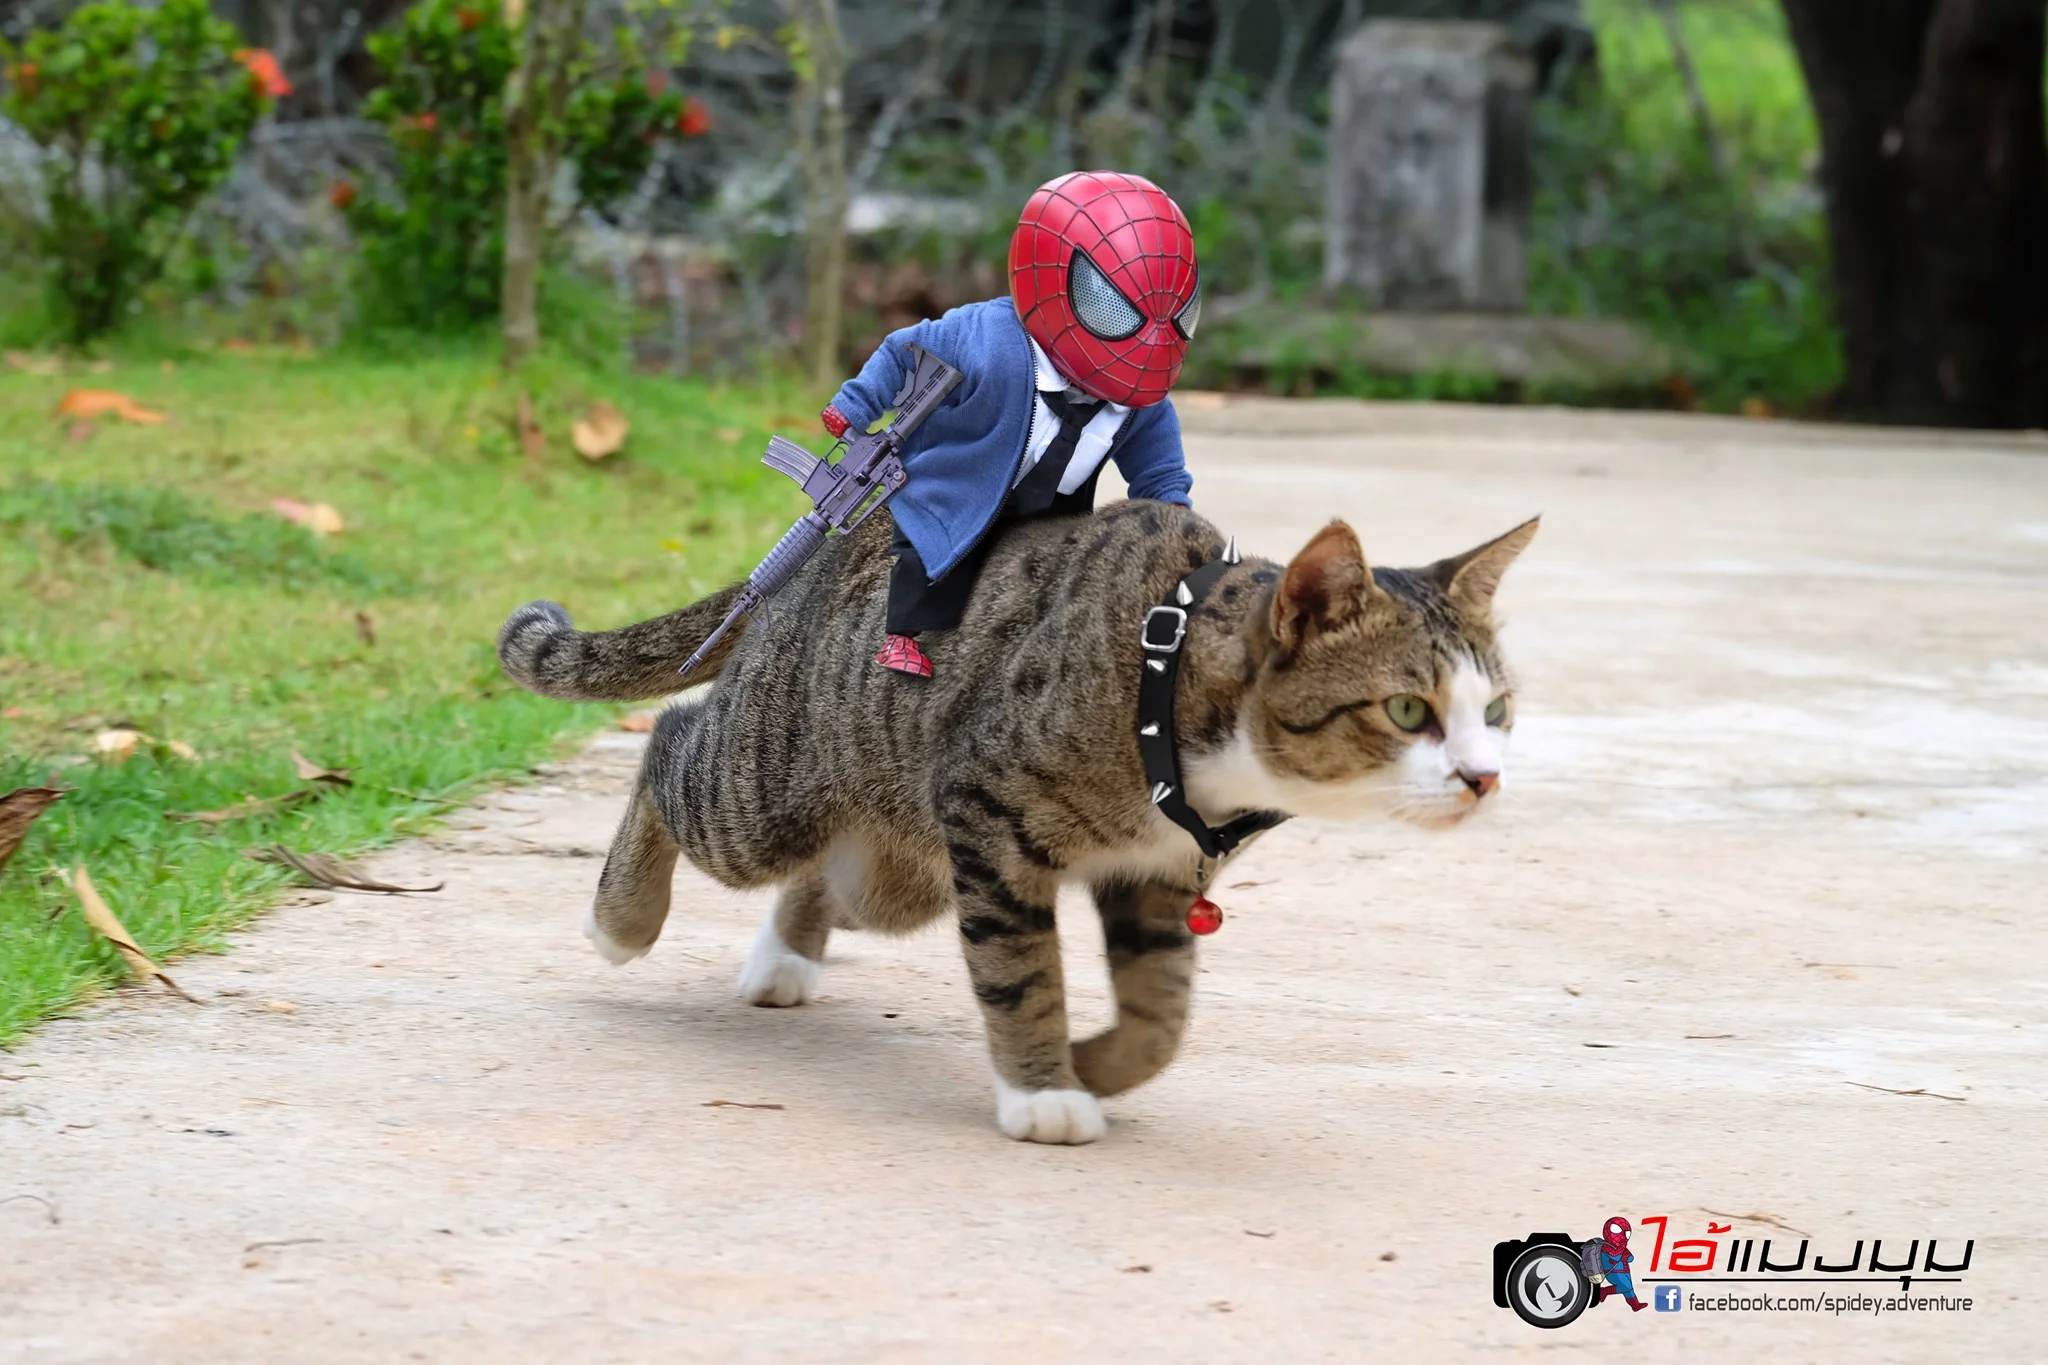 Художник додав до фото з котиками зображення Людини-павука – це виглядає дуже смішно - фото 459373